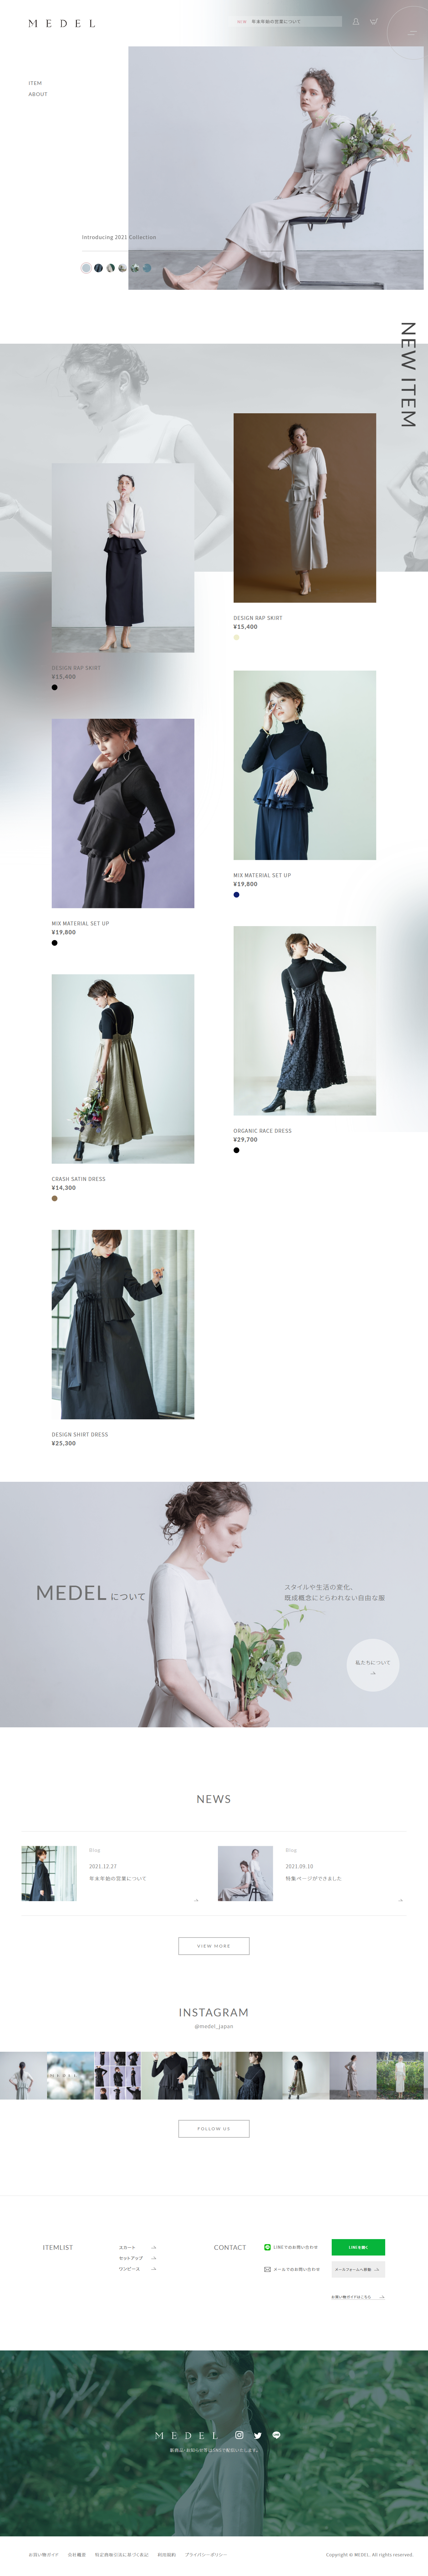 ファッション・ジュエリー ホームページ制作 WEBデザイン参考ギャラリー MEDEL